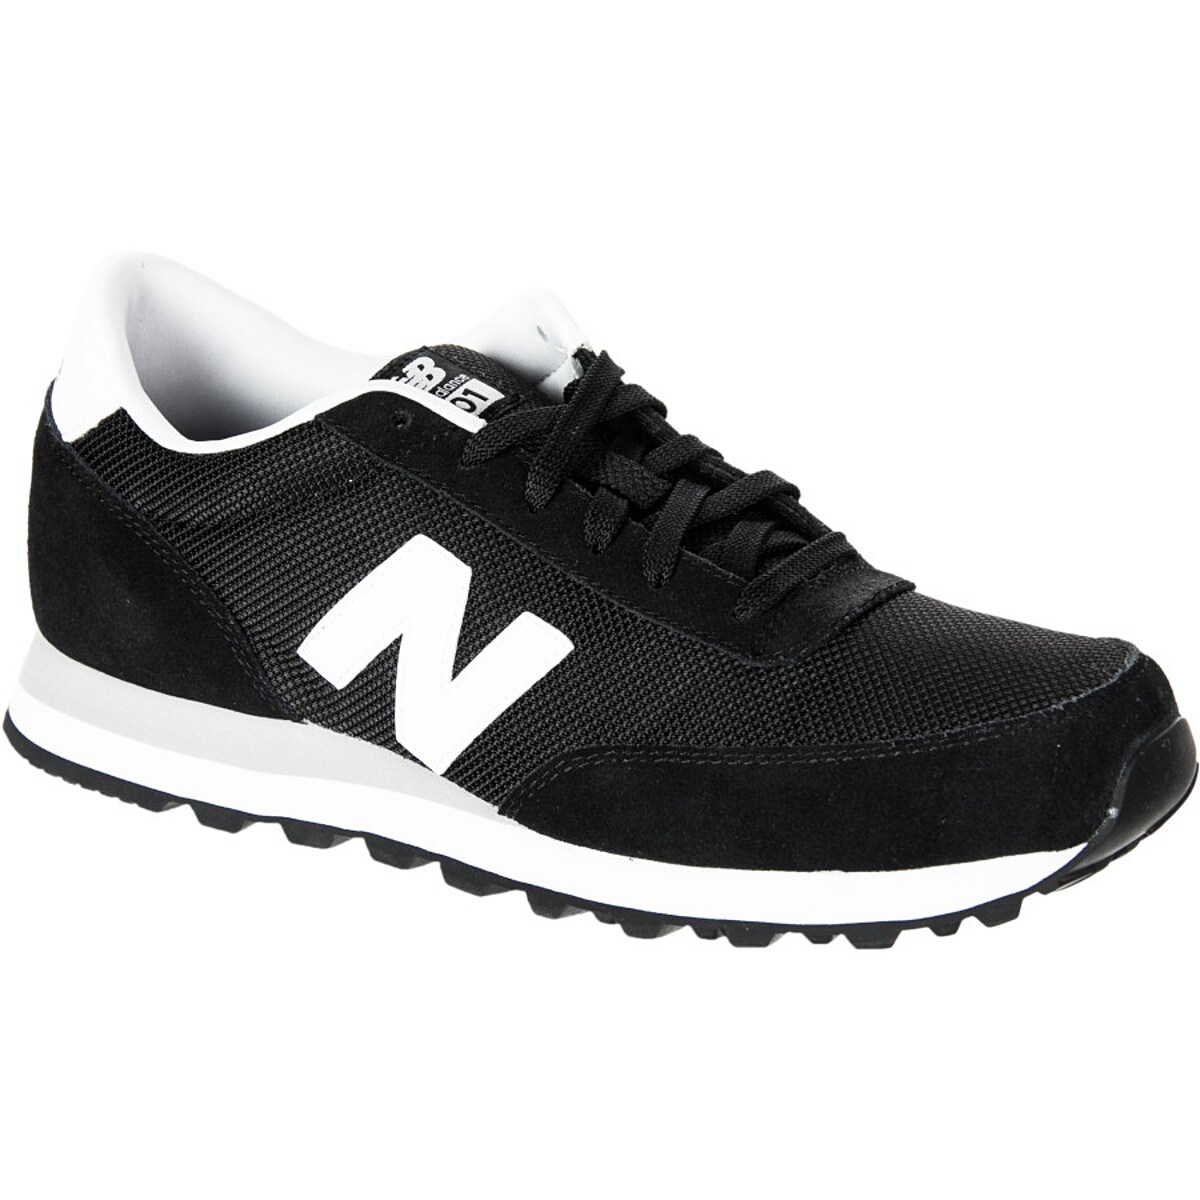 New Balance 501 Shoe - Men's - Footwear